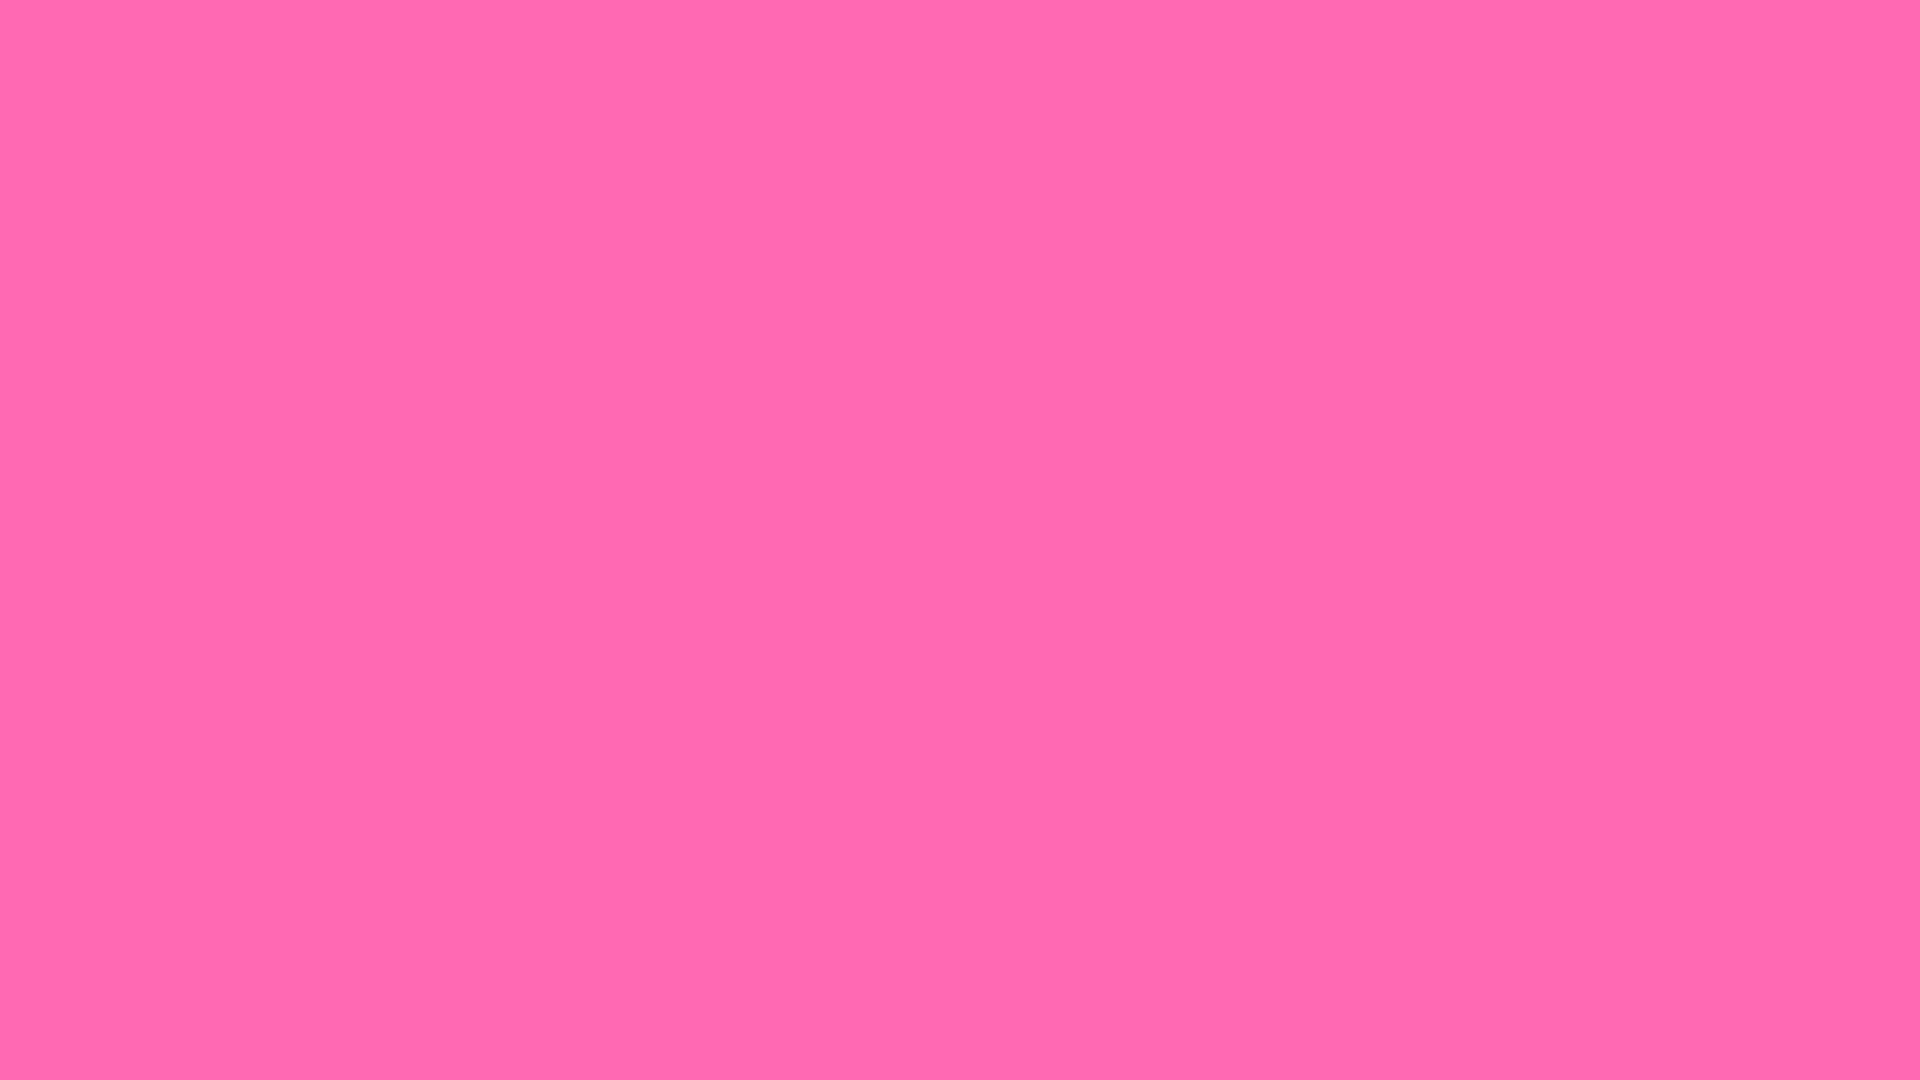 Gam màu hồng này đang được nhiều người yêu thích vì sự duyên dáng và đầy nữ tính mà nó mang lại cho không gian sử dụng. Và hình nền màu hồng từ WallpaperSafari chắc chắn sẽ không làm bạn thất vọng. Với một hình ảnh tinh tế và chất lượng cao, sẽ giúp cho bạn có thể trải nghiệm sự dịu dàng của màu hồng một cách chân thật và đầy tinh tế.